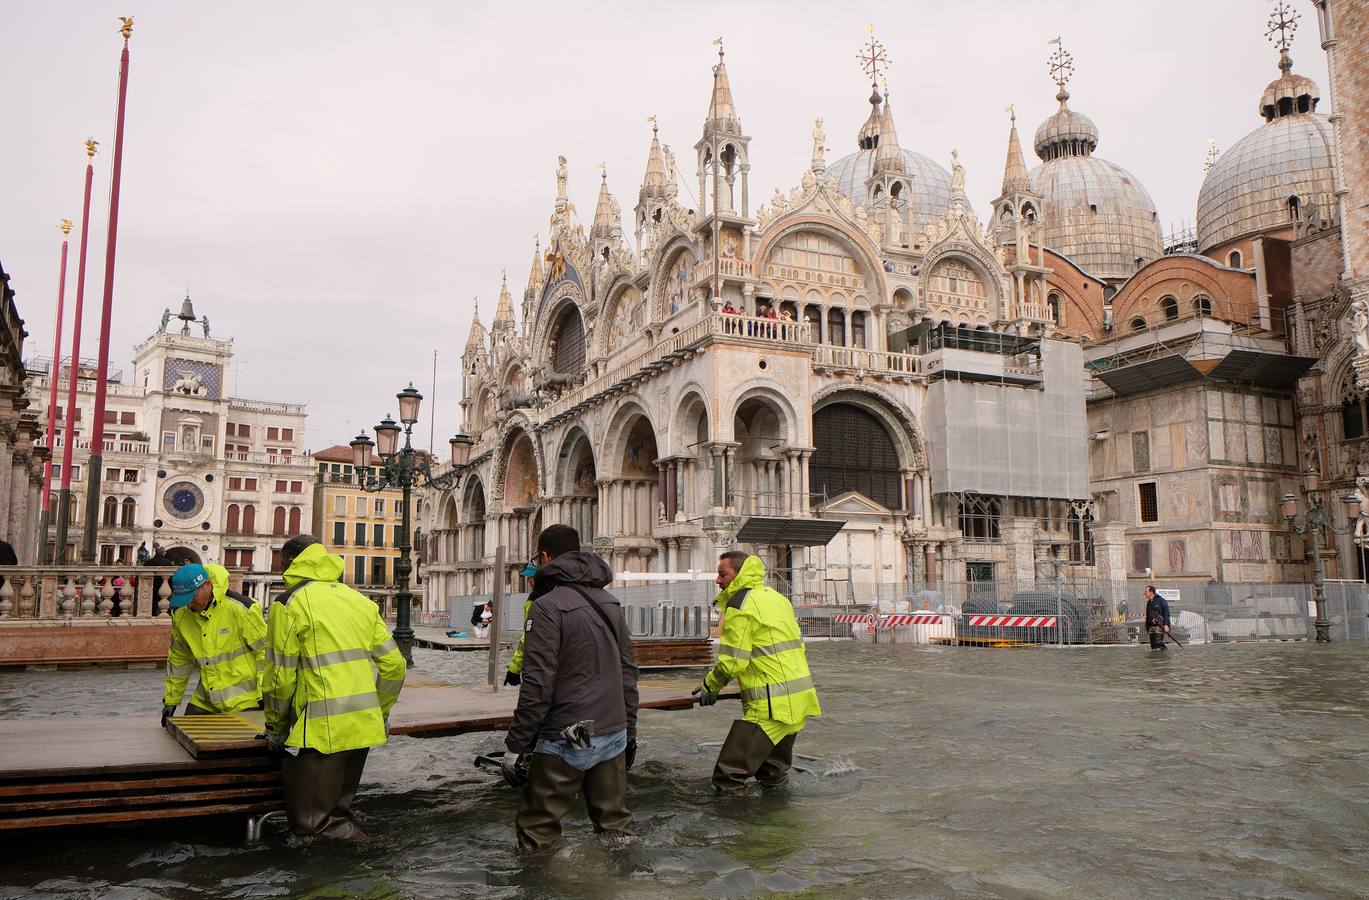 Los turistas se llevarán una anécdota y los residentes unos días de pesadilla. El agua inunda las calles de Venecia tras el paso de un fuerte temporal con intensas lluvias que han provocado el cierre de escuelas, varias carreteras y algunas conexiones ferroviarias.